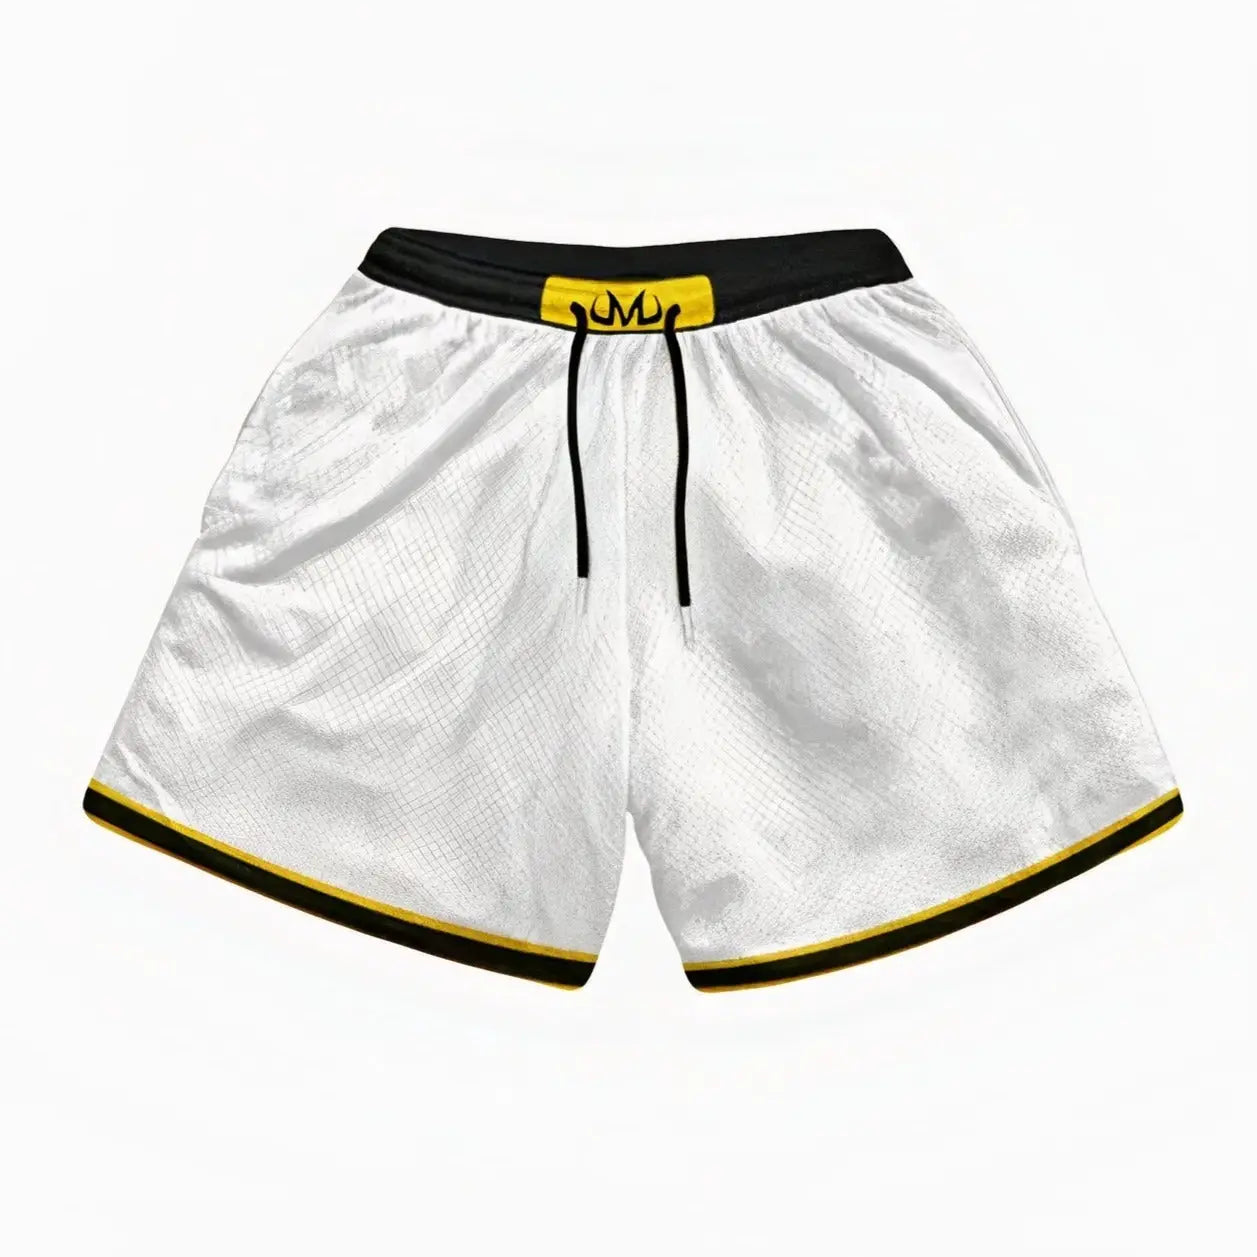 Majin Buu White Athletic Shorts